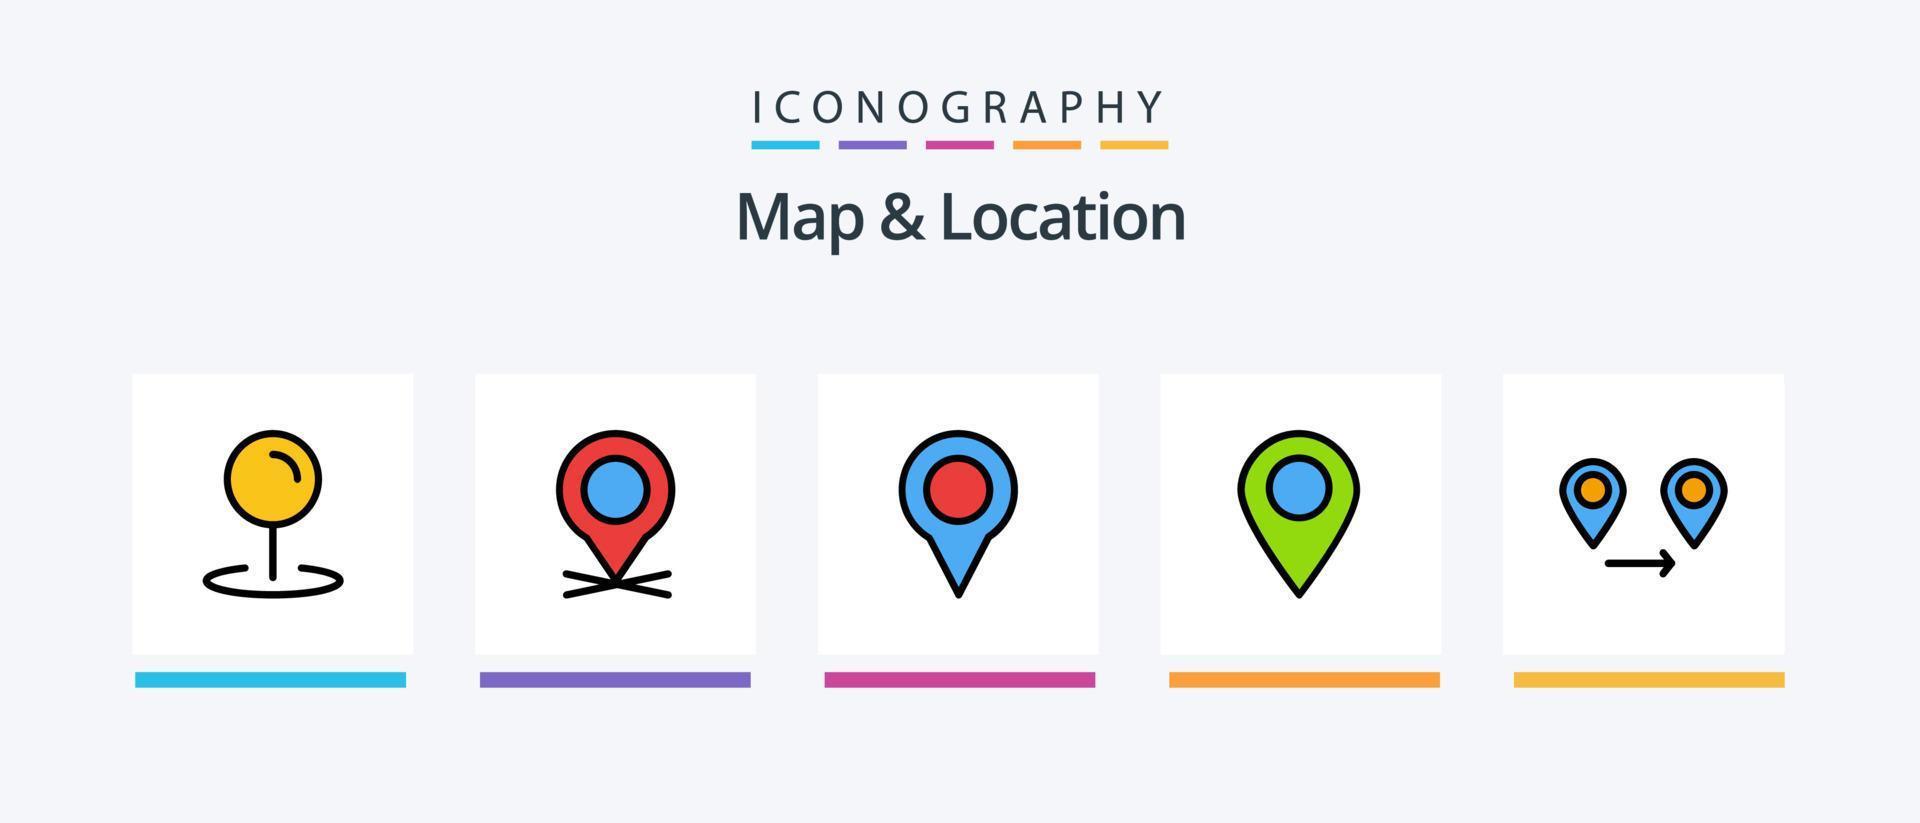 carte et ligne de localisation remplies de 5 packs d'icônes comprenant une épingle. carte. étoile. emplacement. broche. conception d'icônes créatives vecteur